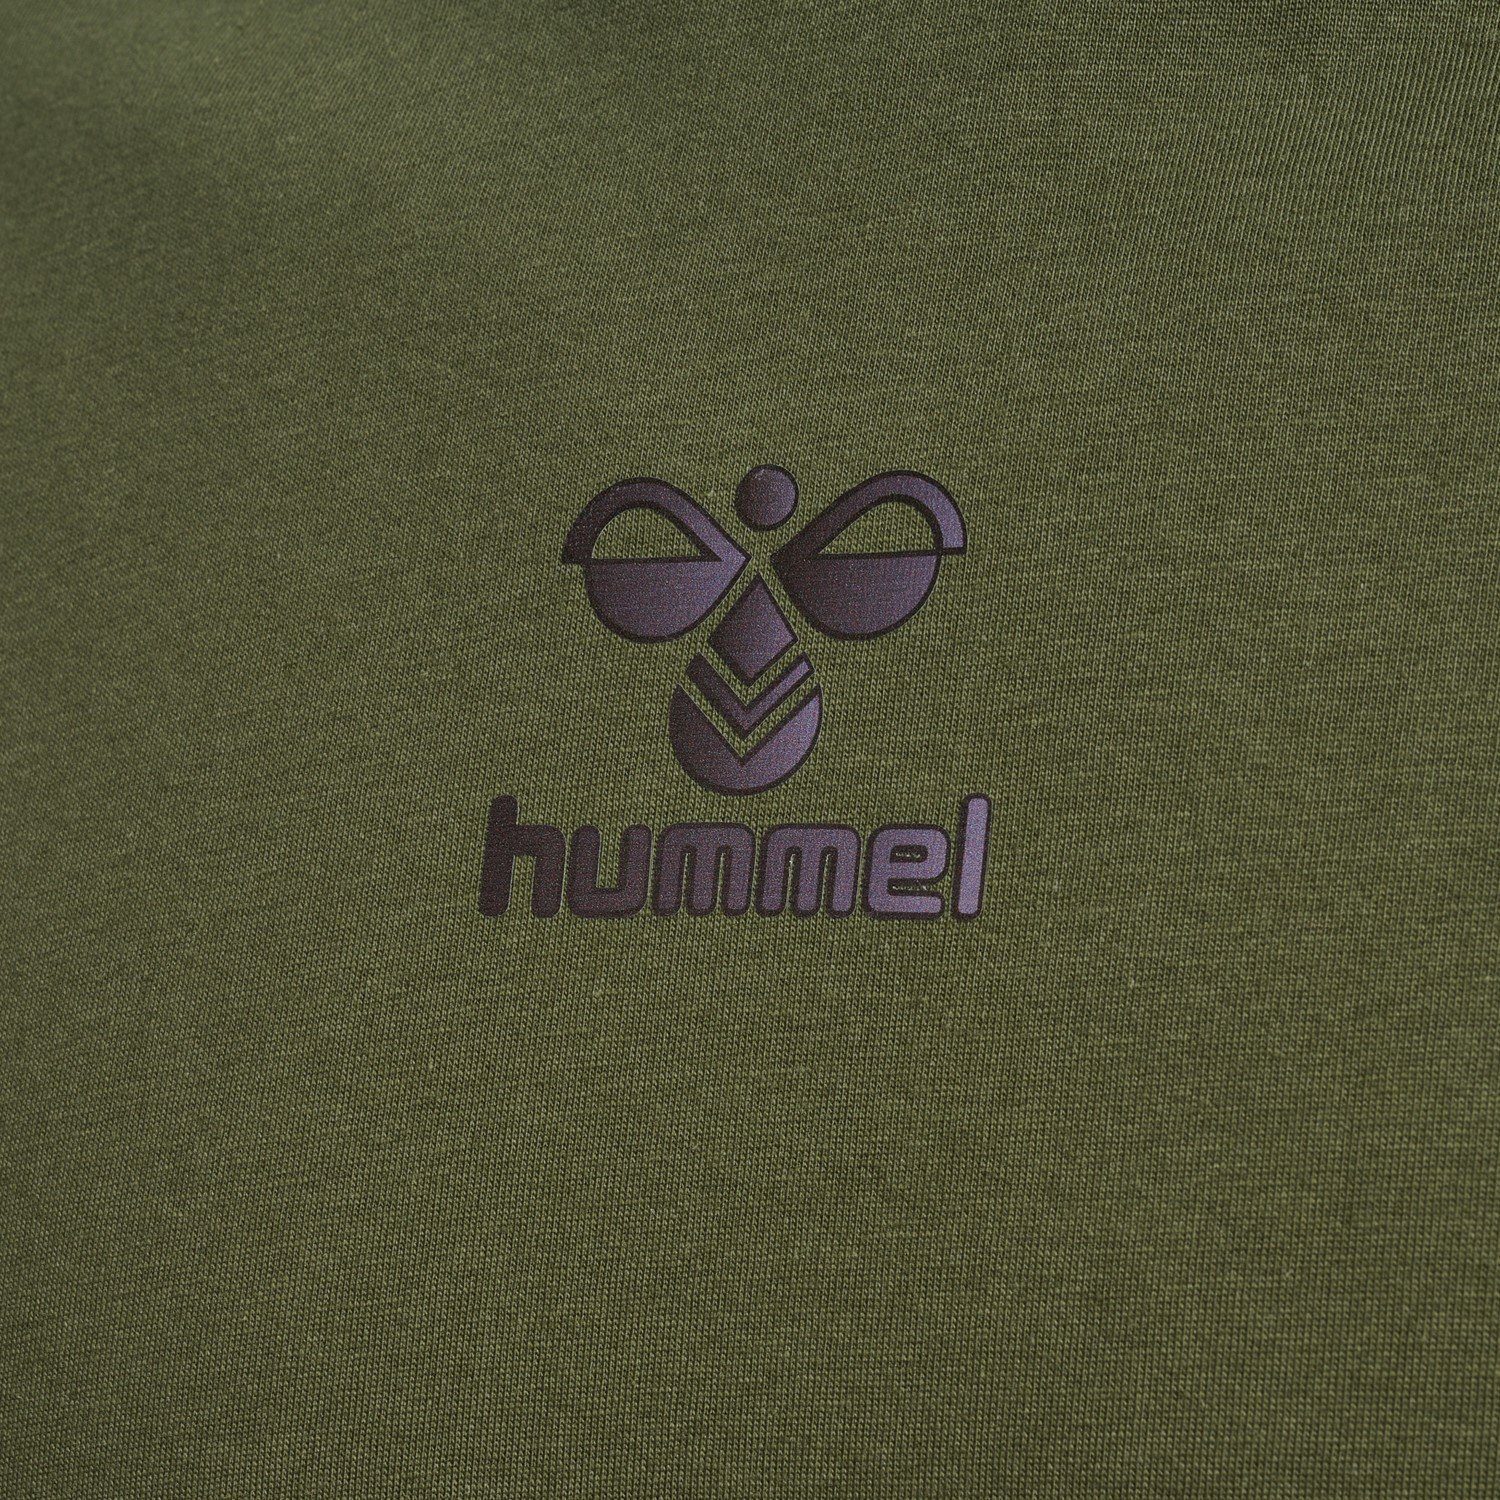 hummel T-Shirt Sport 5788 Olive T-Shirt Jersey in Kurzarm Funktionsshirt